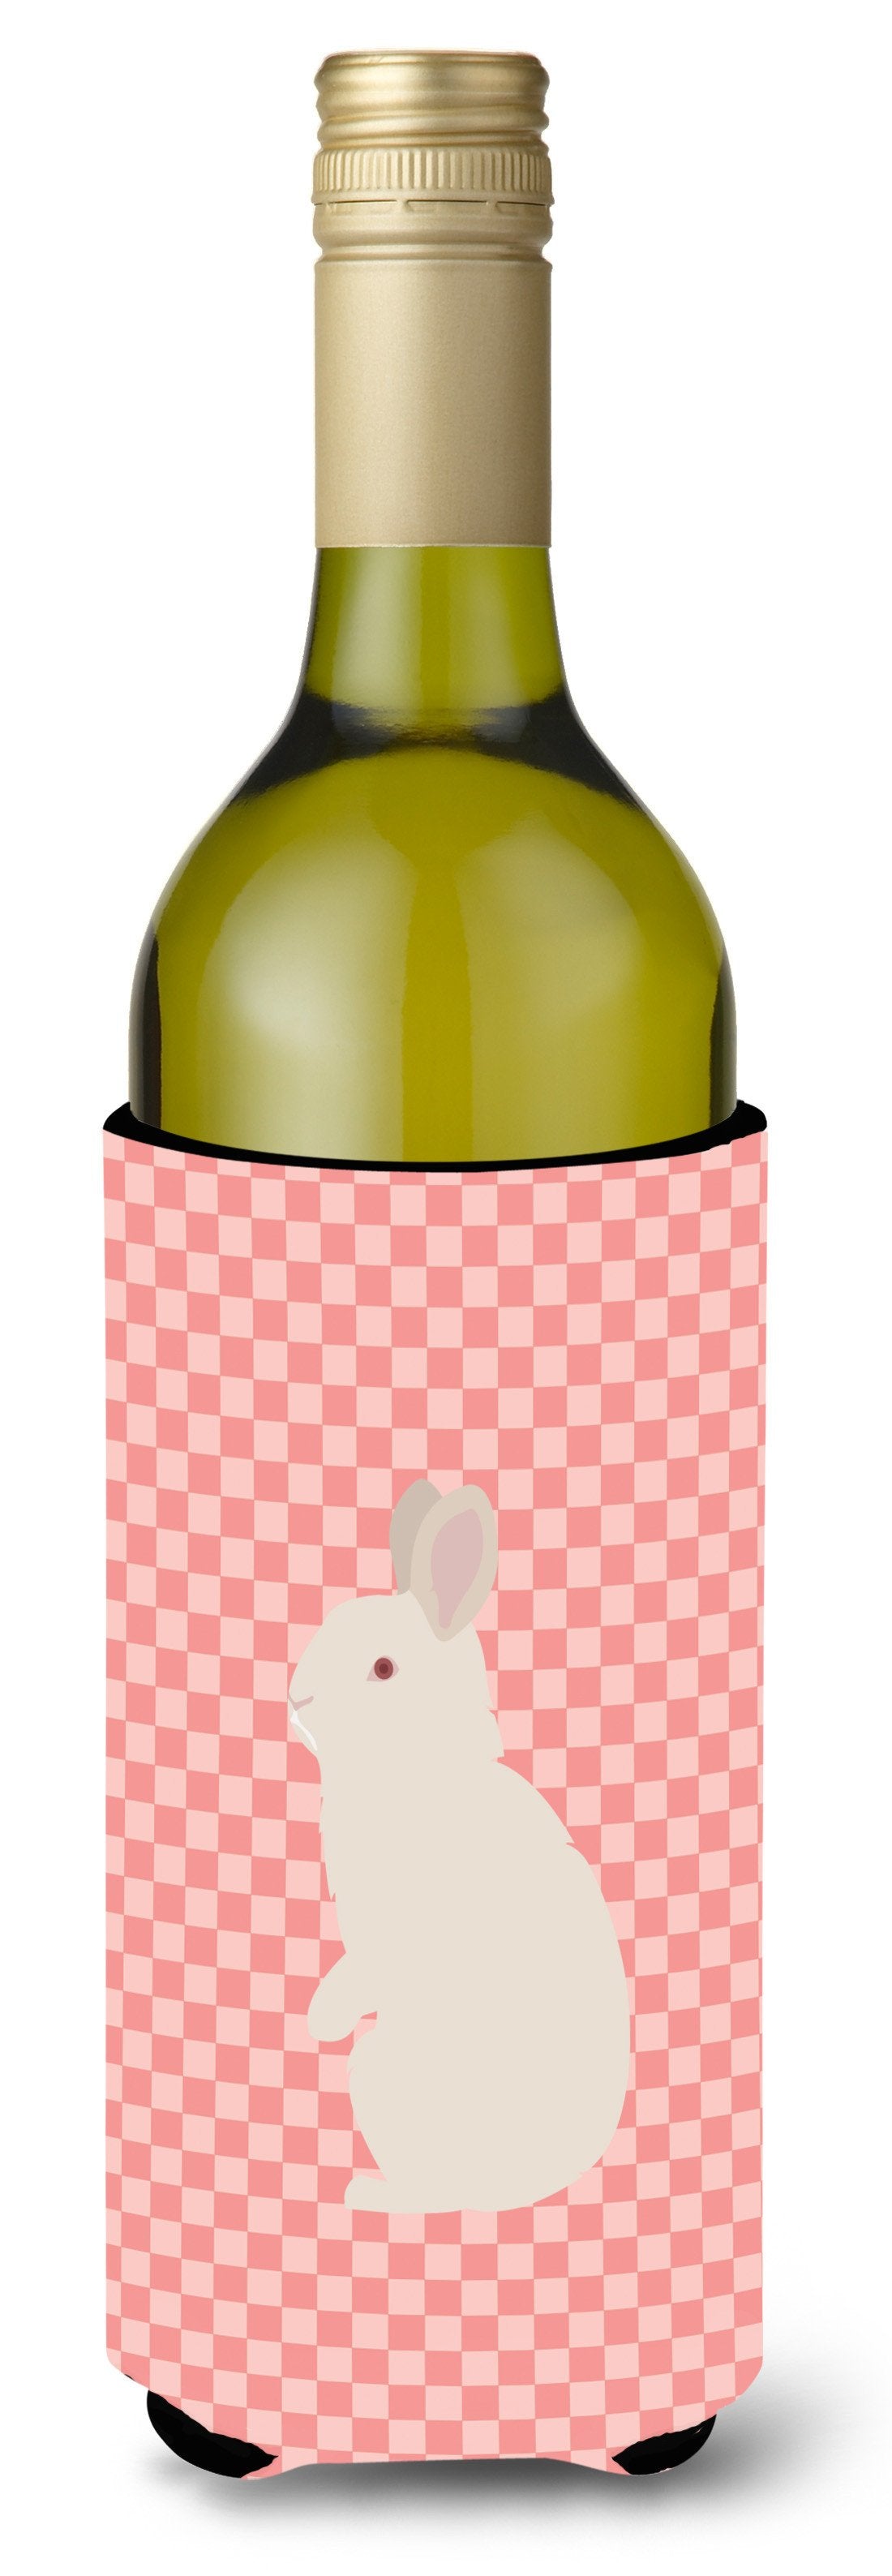 New Zealand White Rabbit Pink Check Wine Bottle Beverge Insulator Hugger BB7965LITERK by Caroline&#39;s Treasures